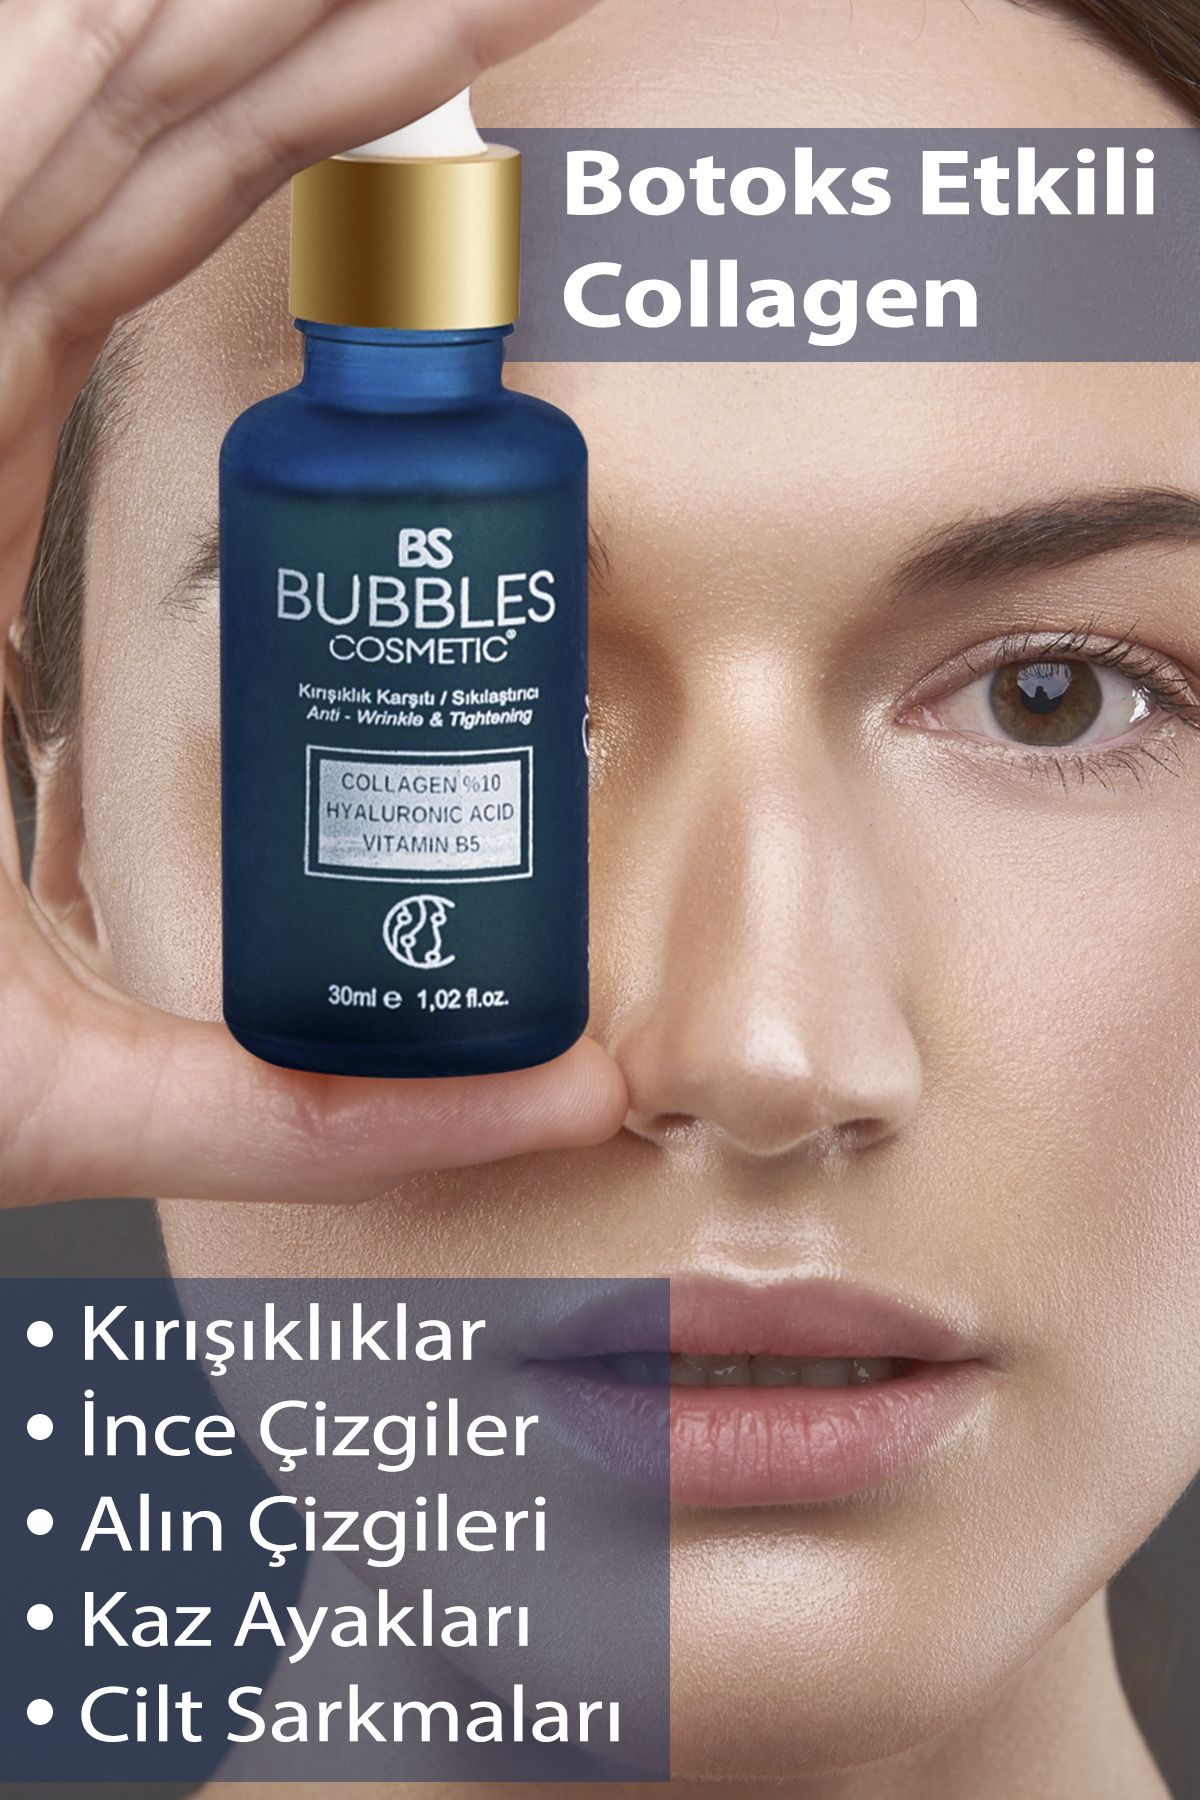 bs bubbles cosmetic Kolajen Collagen Serum Yaşlanma Ve Kırışıklık Karşıtı Sıkılaştırıcı Hyaluronic &vitaminb5